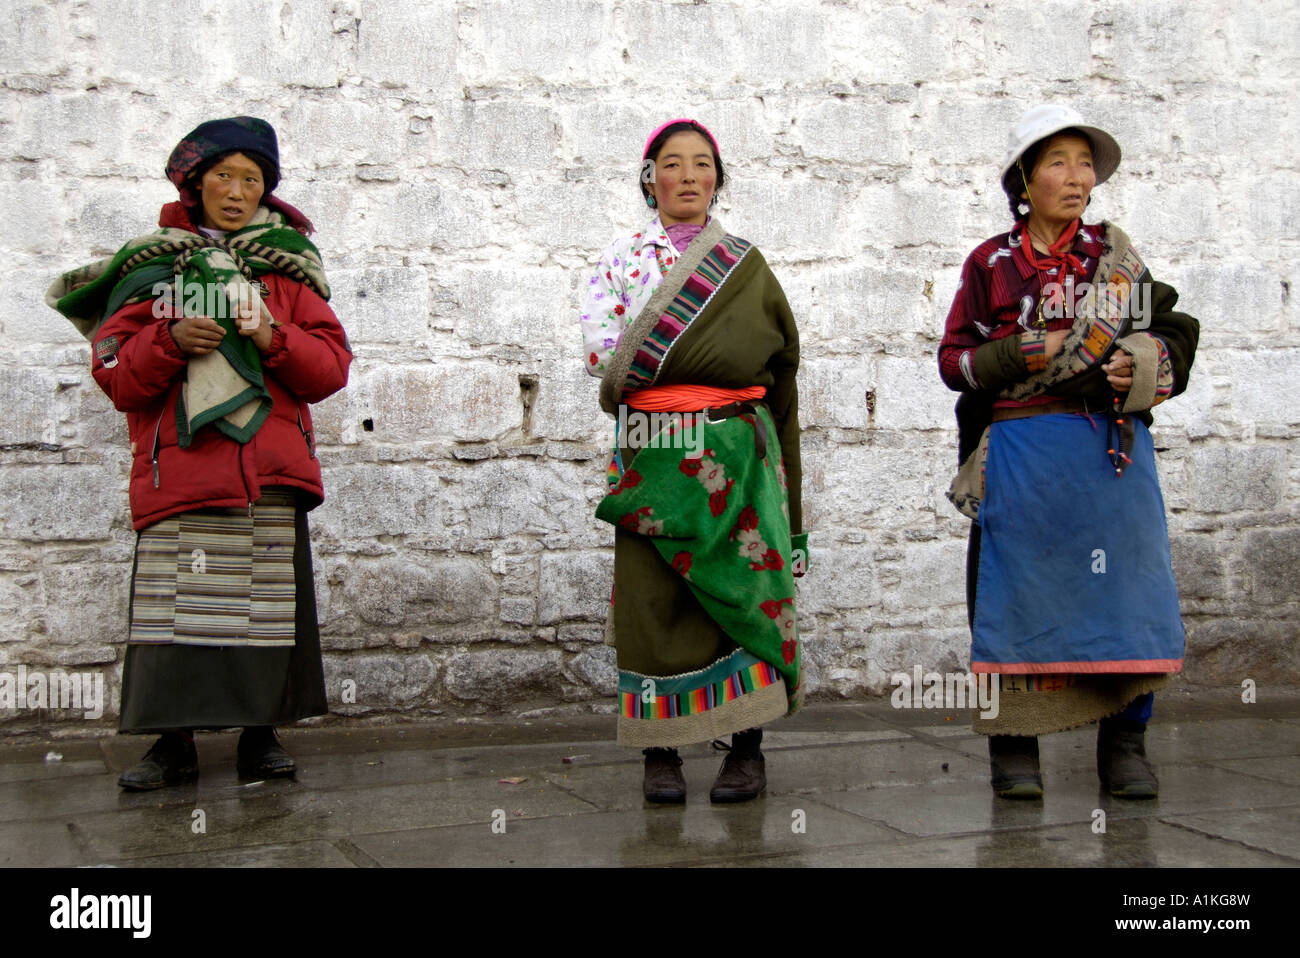 Trois femmes tibétaines à Lhassa au Tibet 19 OCT 2006 Banque D'Images